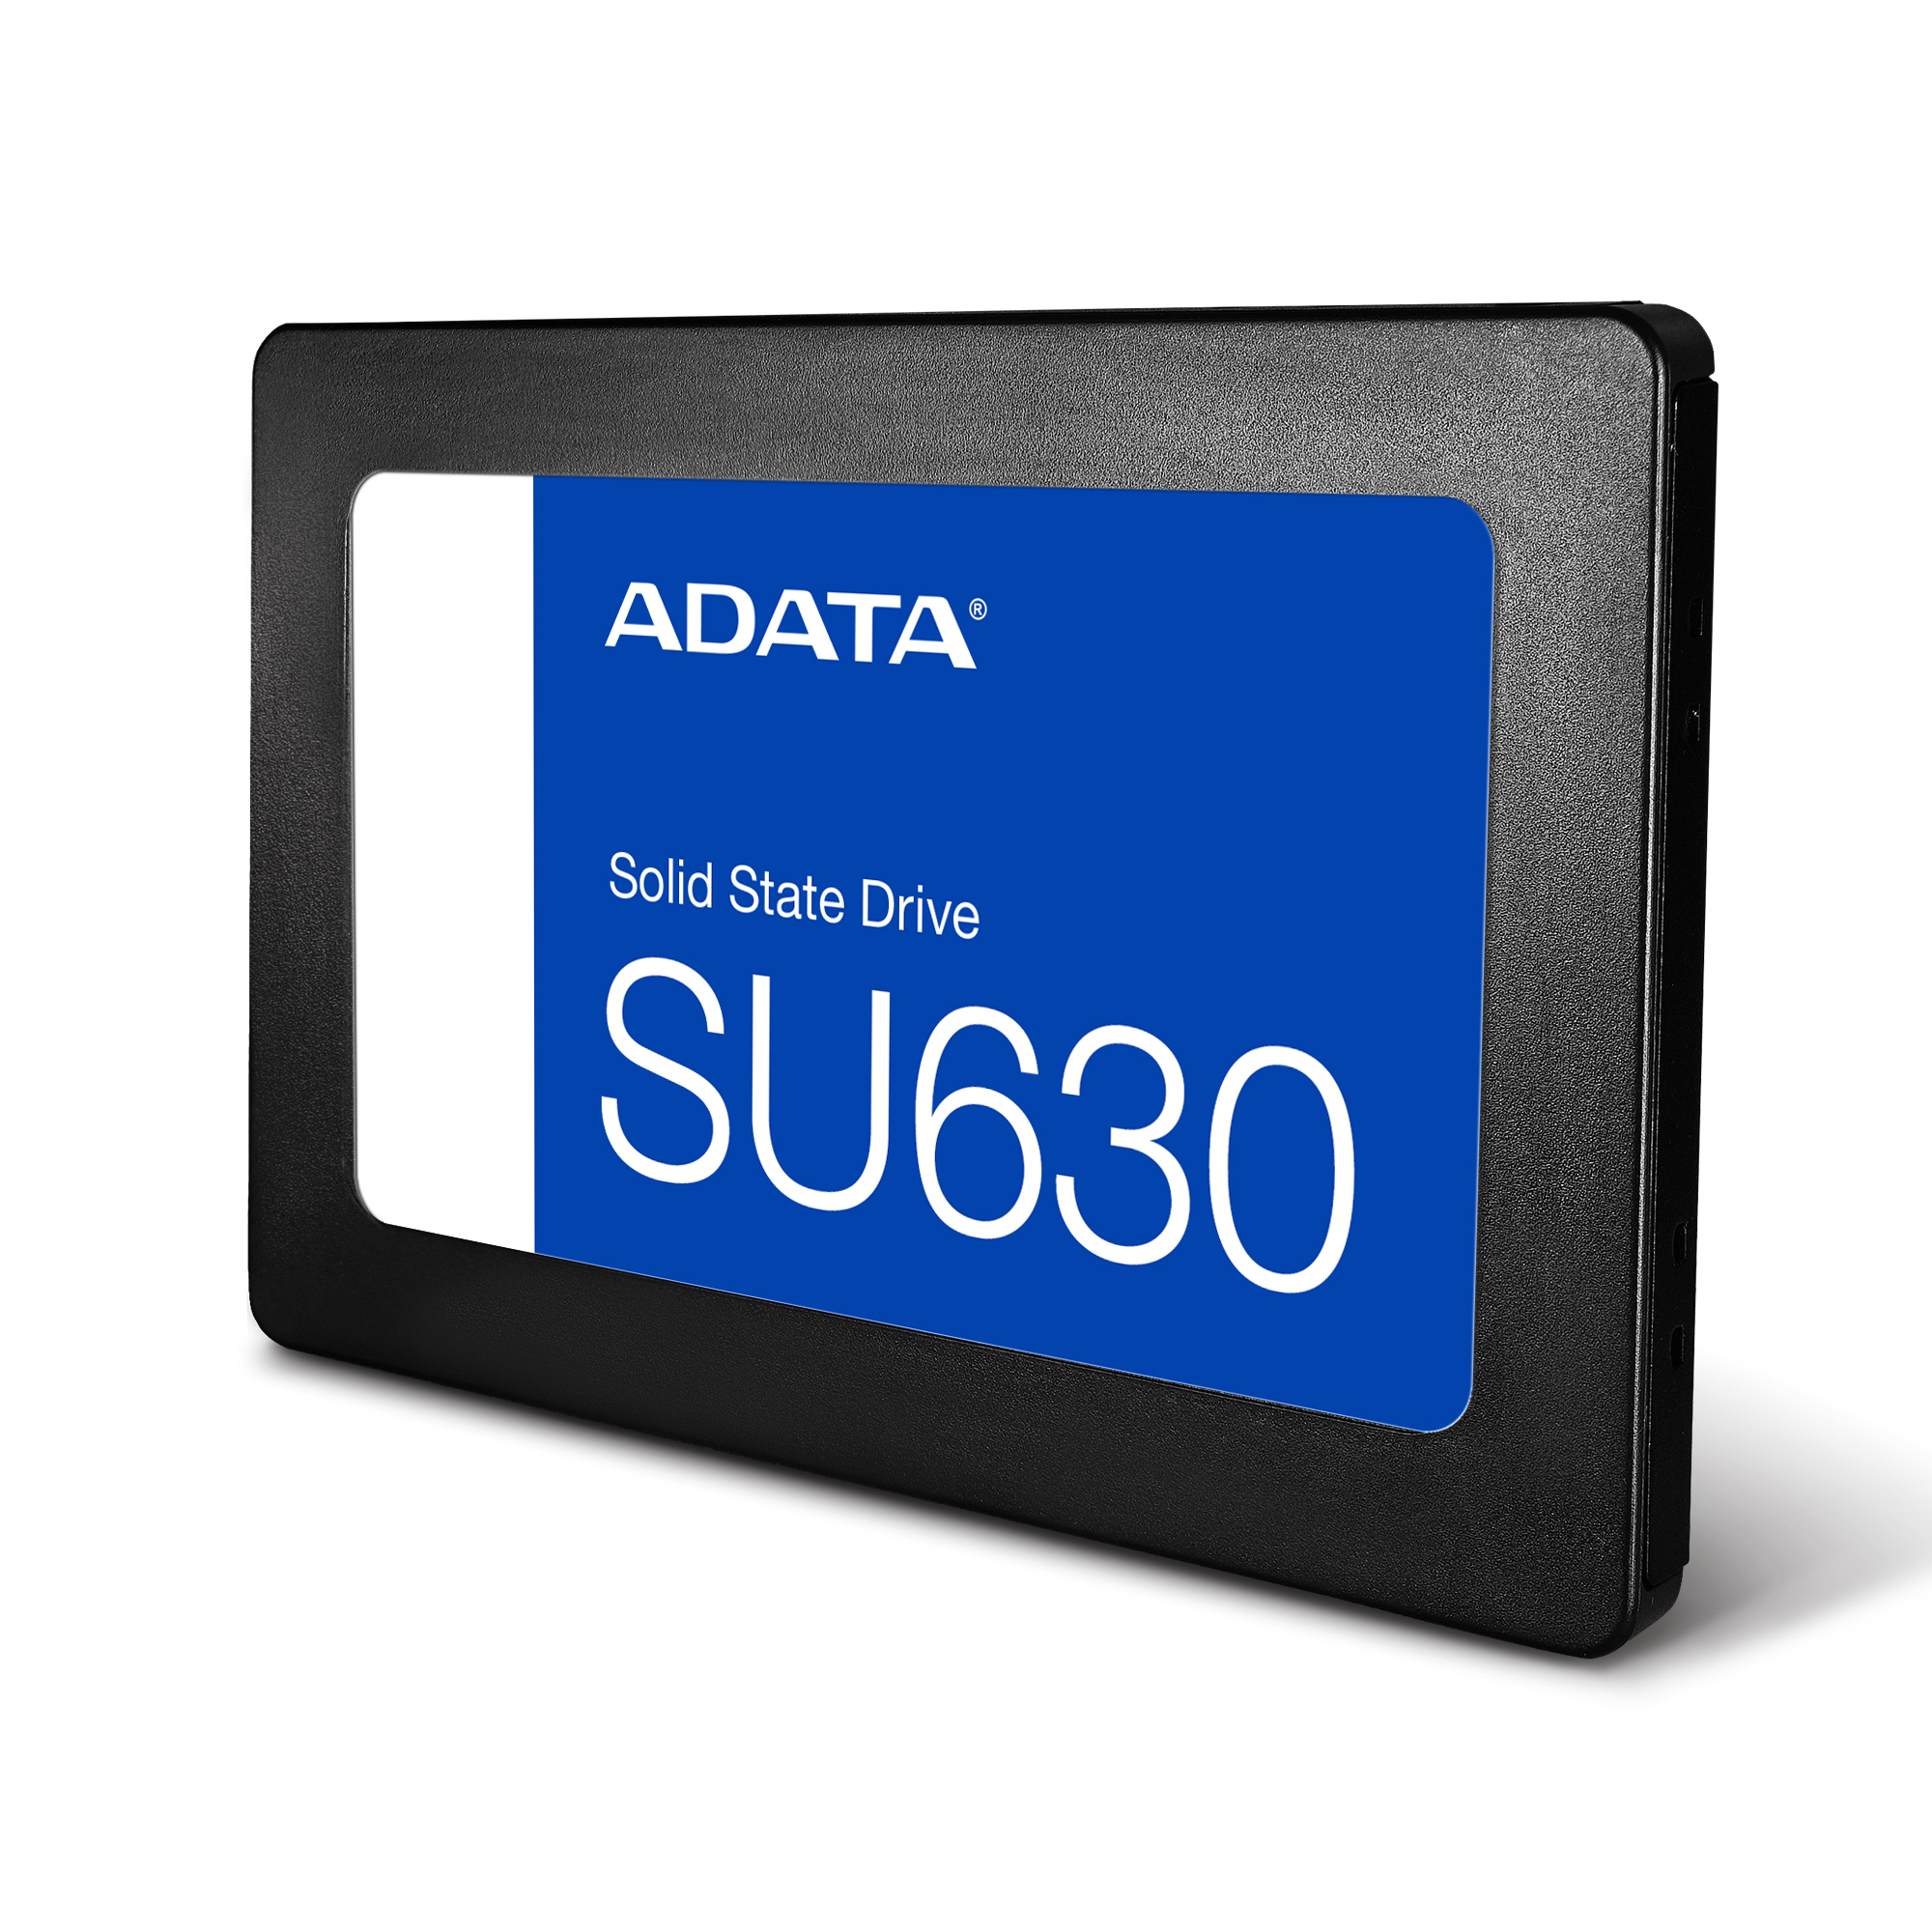 スマホ/家電/カメラ新品 ADATA Ultimate SU630 2.5インチ SSD 480GB